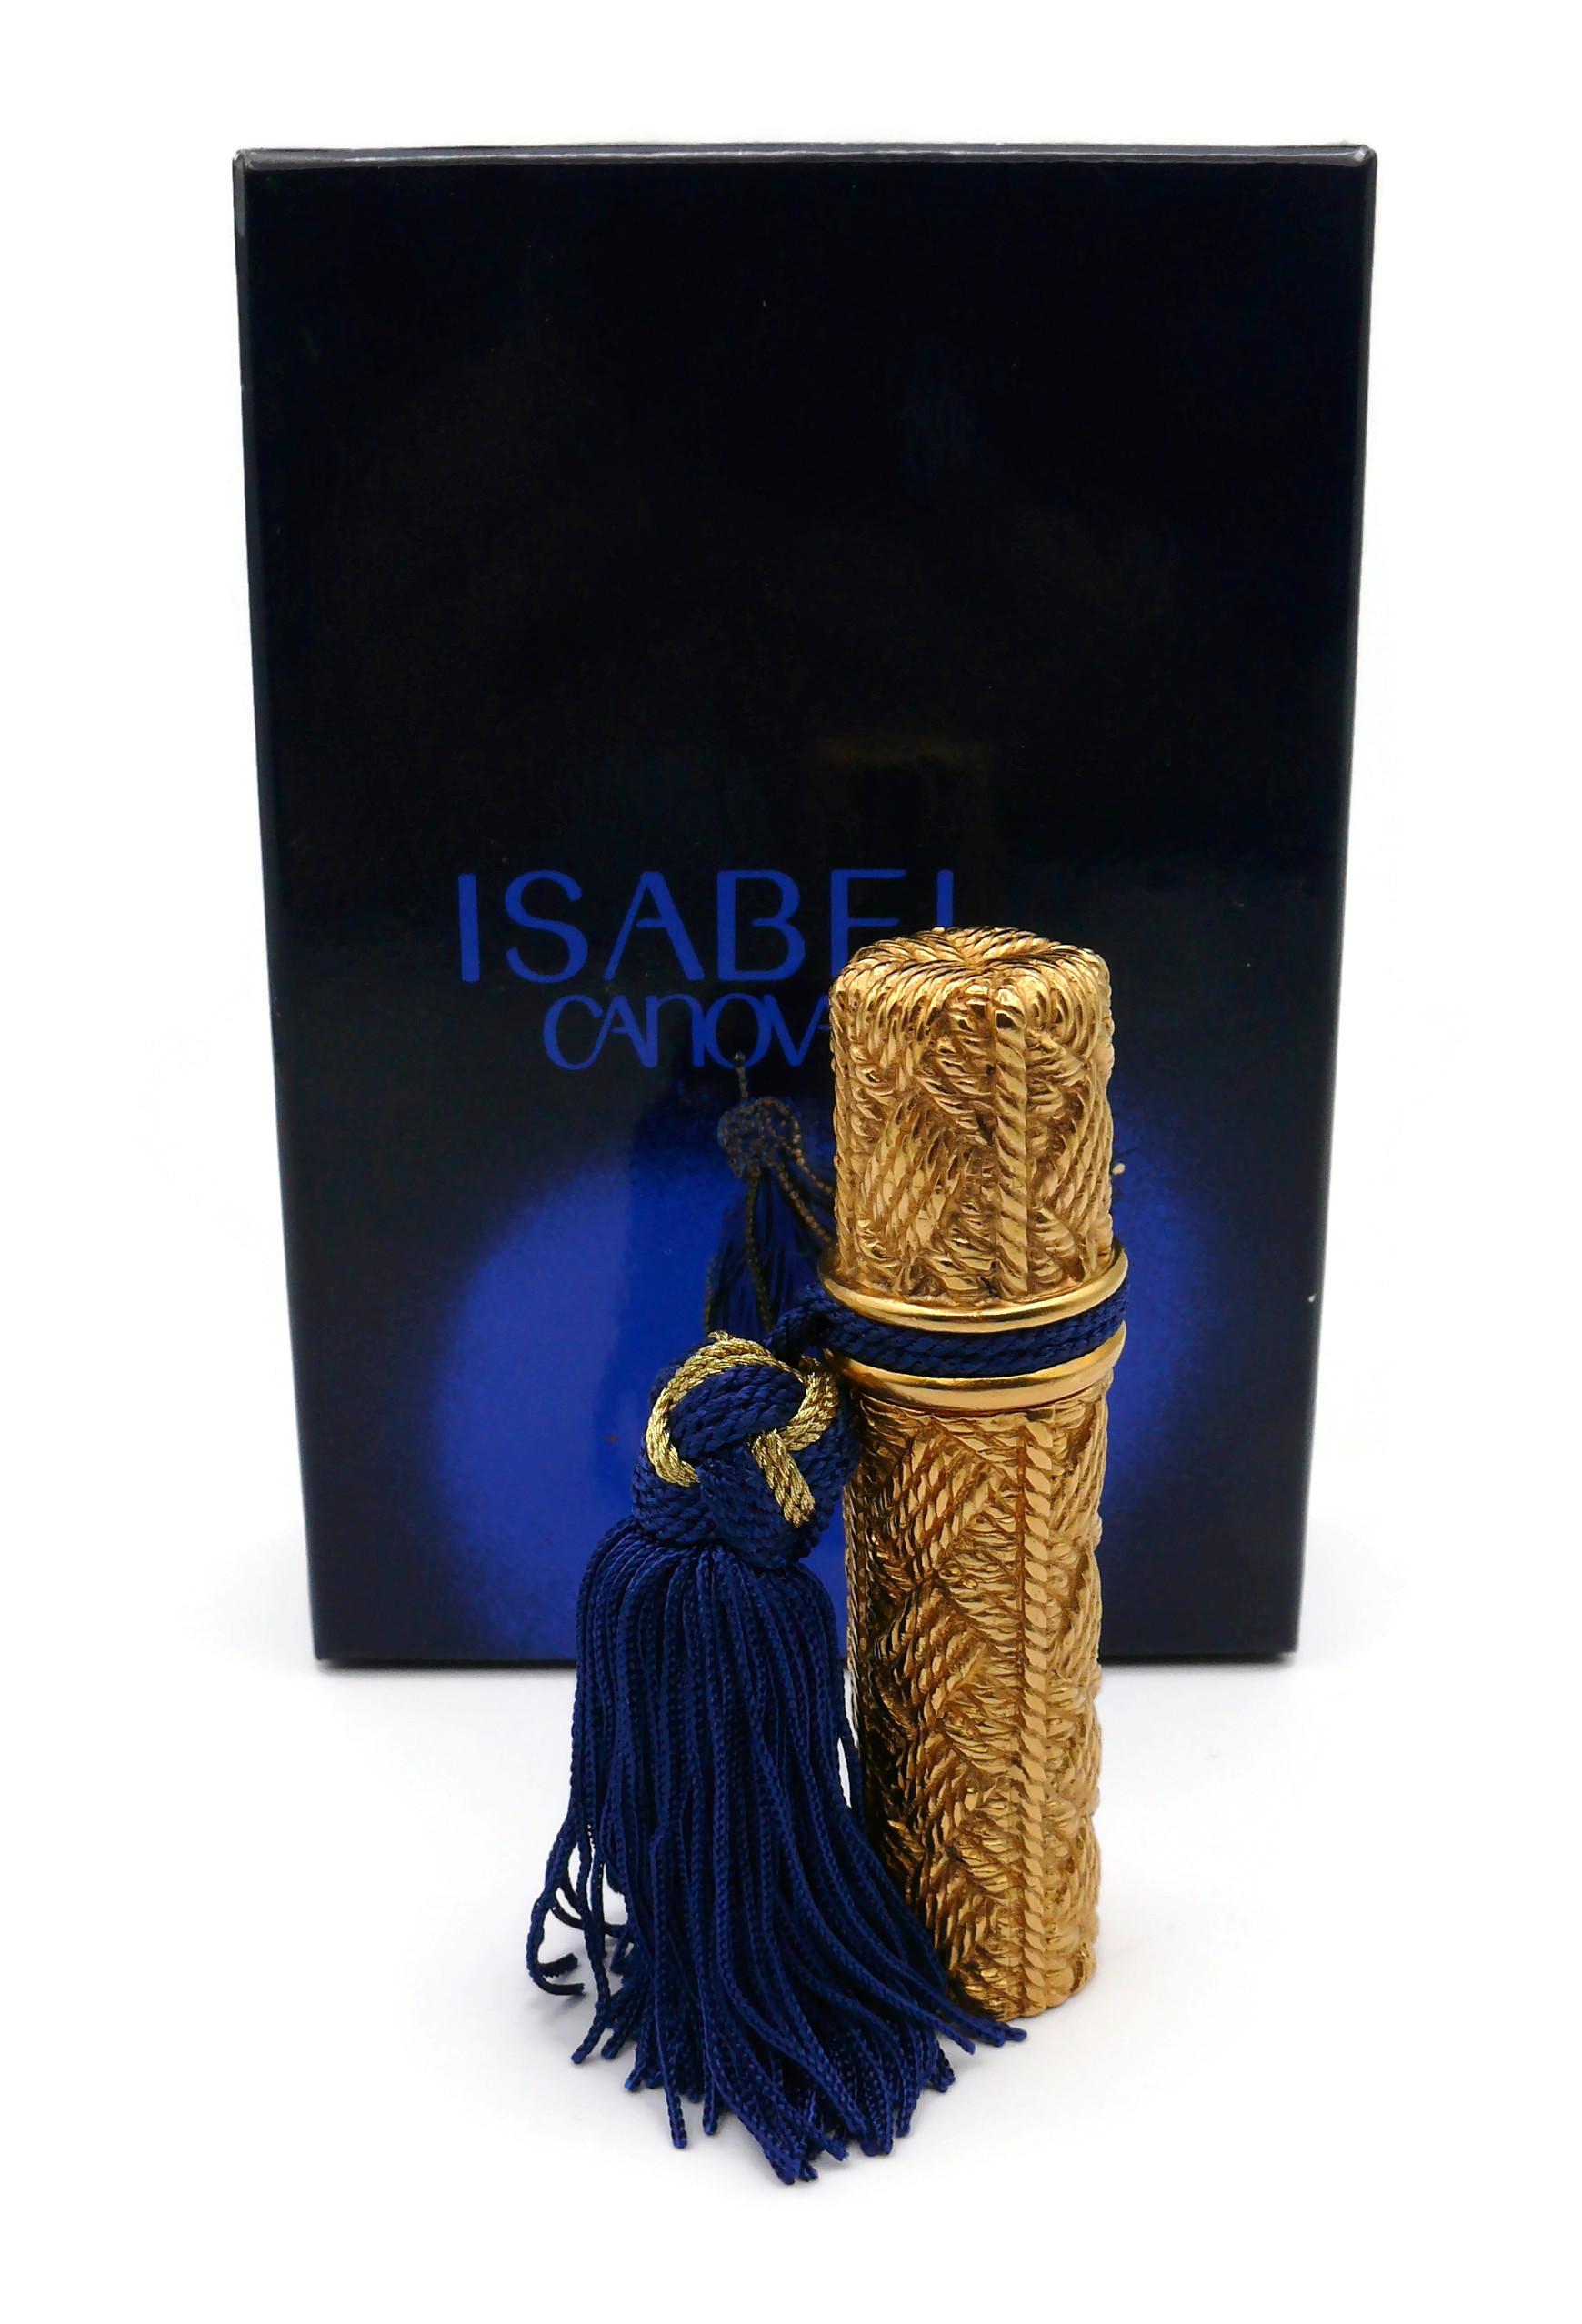 ISABEL CANOVAS Parfum by ROBERT GOOSSENS vaporisateur vintage avec un design en métal doré, agrémenté d'un pompon bleu et or.

Embossé ISABEL CANOVAS PARIS Made in France.

INFORMATIONS IMPORTANTES
- L'insert à parfum en verre ISABEL CANOVAS est